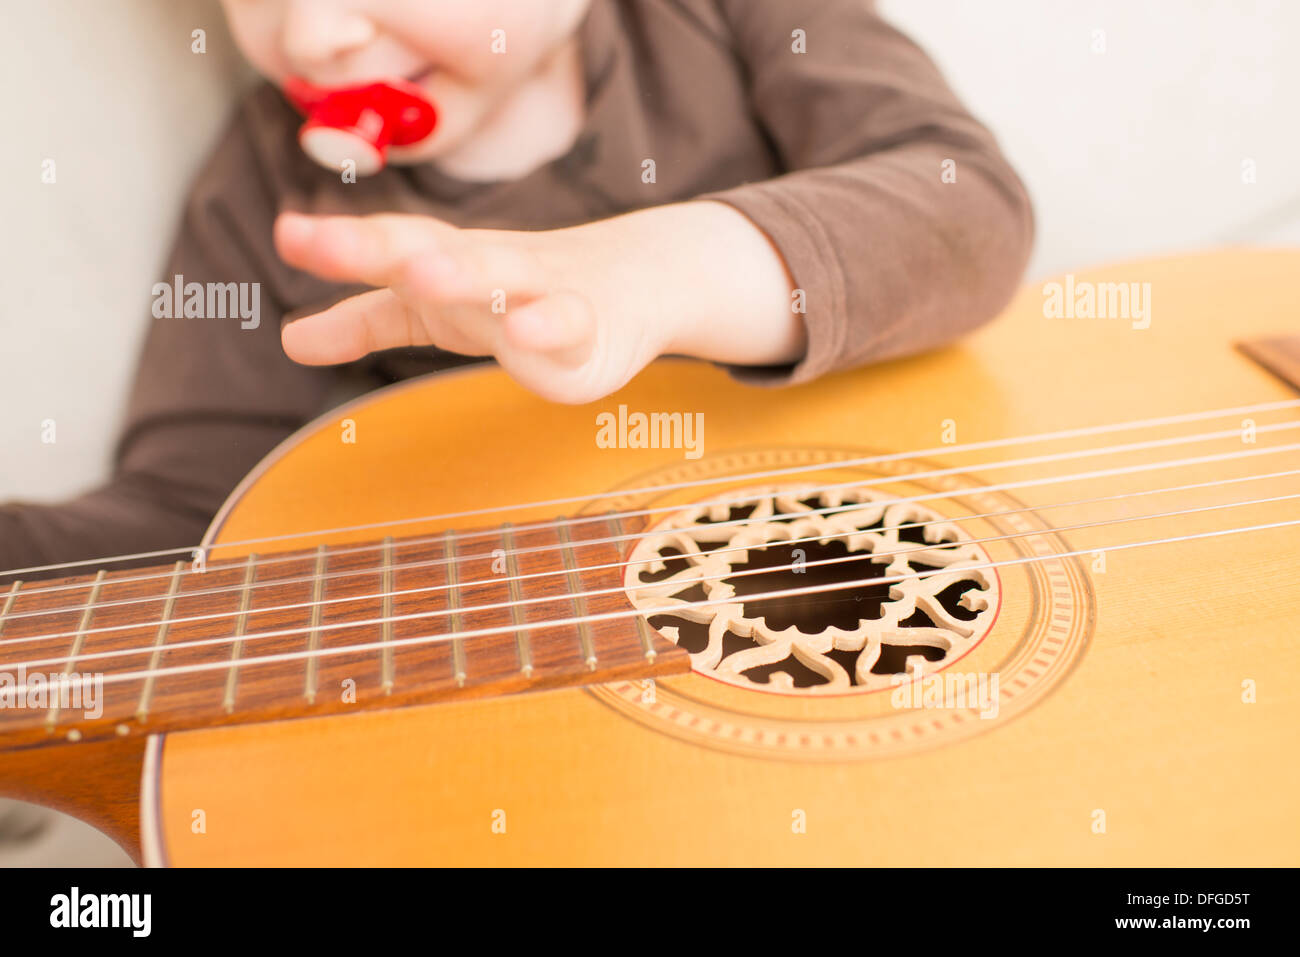 Enfant De 2 Ans De Musique De écoute Photo stock - Image du